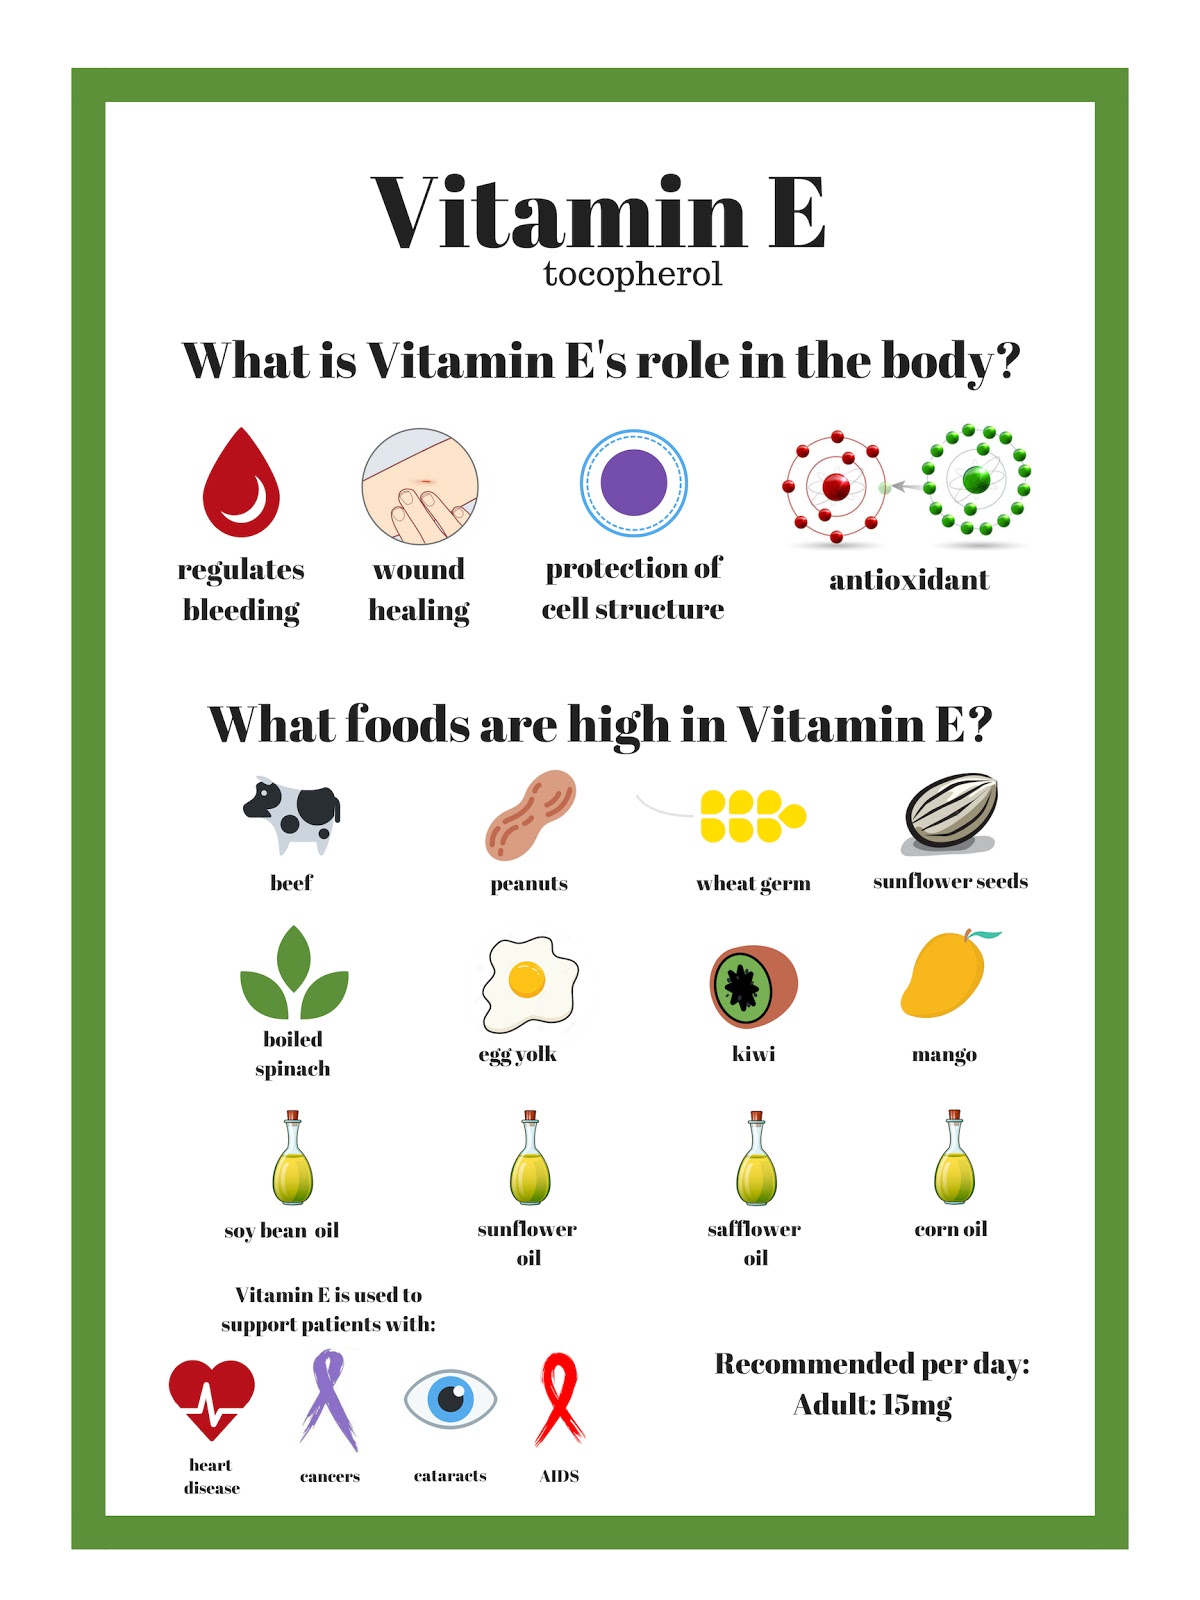 Role of Vitamin E in the body